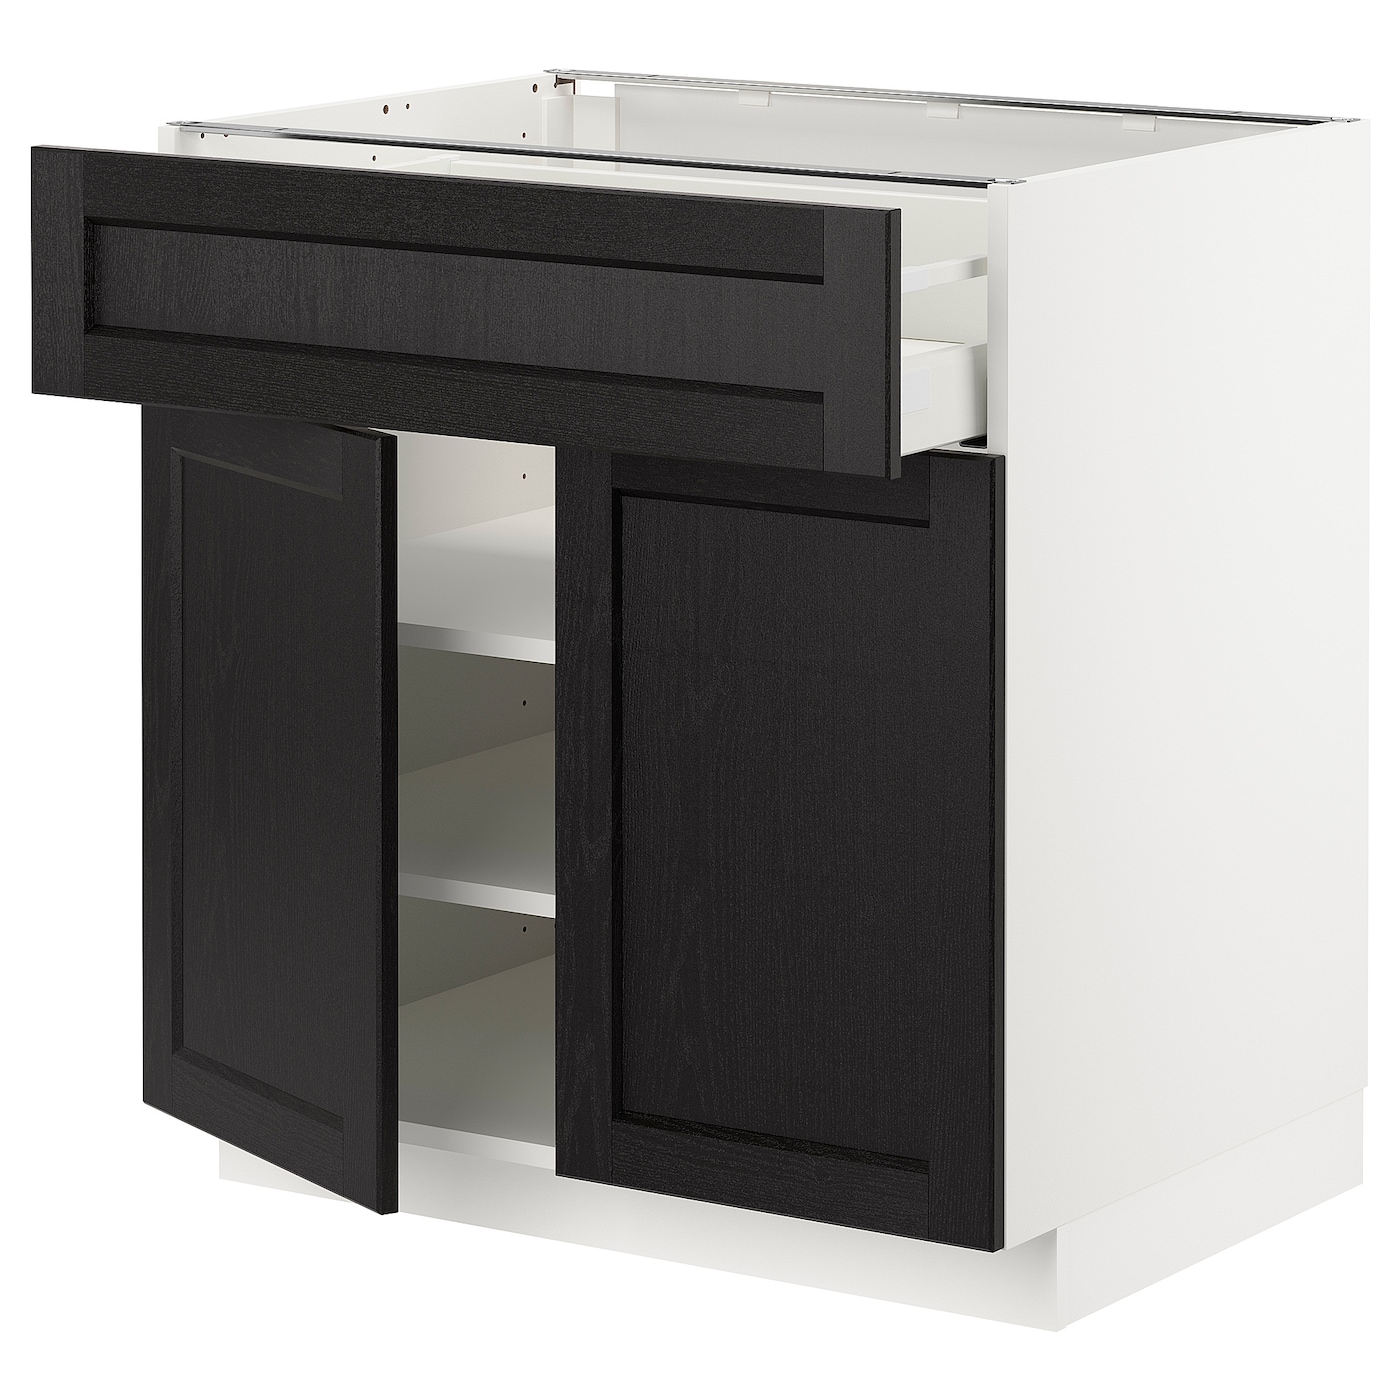 Напольный кухонный шкаф  - IKEA METOD MAXIMERA, 88x61,9x80см, белый/черный, МЕТОД МАКСИМЕРА ИКЕА